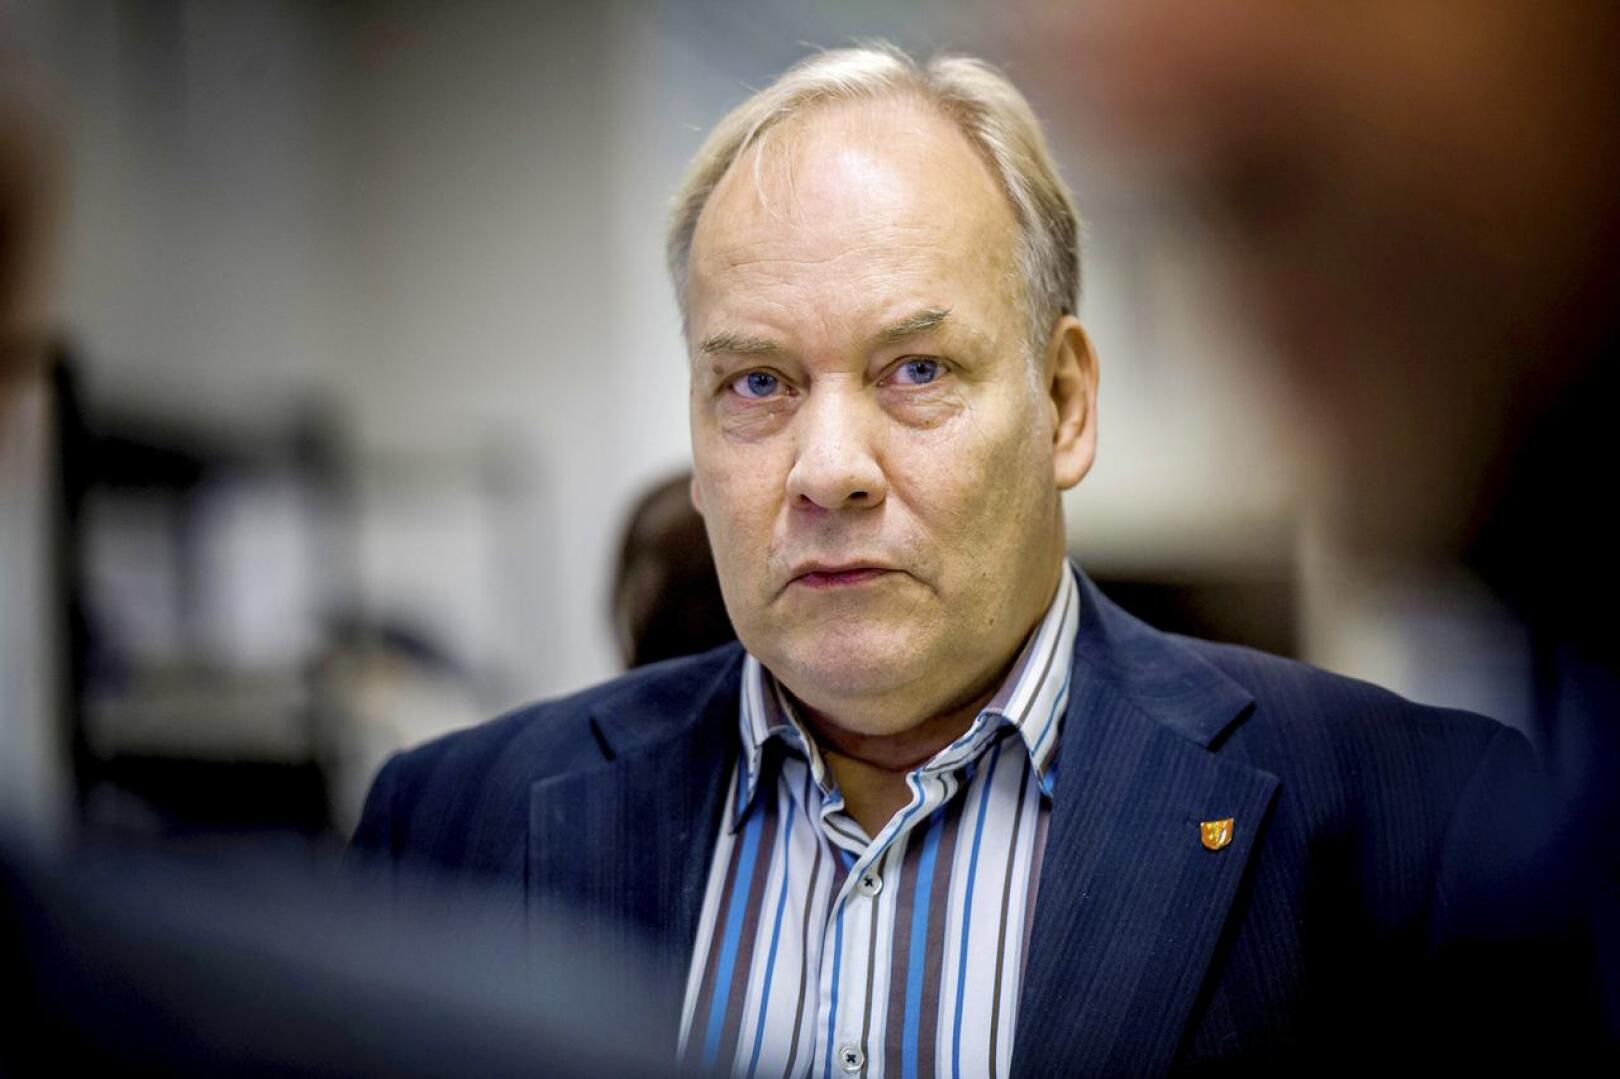 Keskustan ruotsinkielisen piirin entinen toiminnanjohtaja, kruunupyyläinen Peter Albäck ilmoitti Facebookissa eronneensa puolueesta